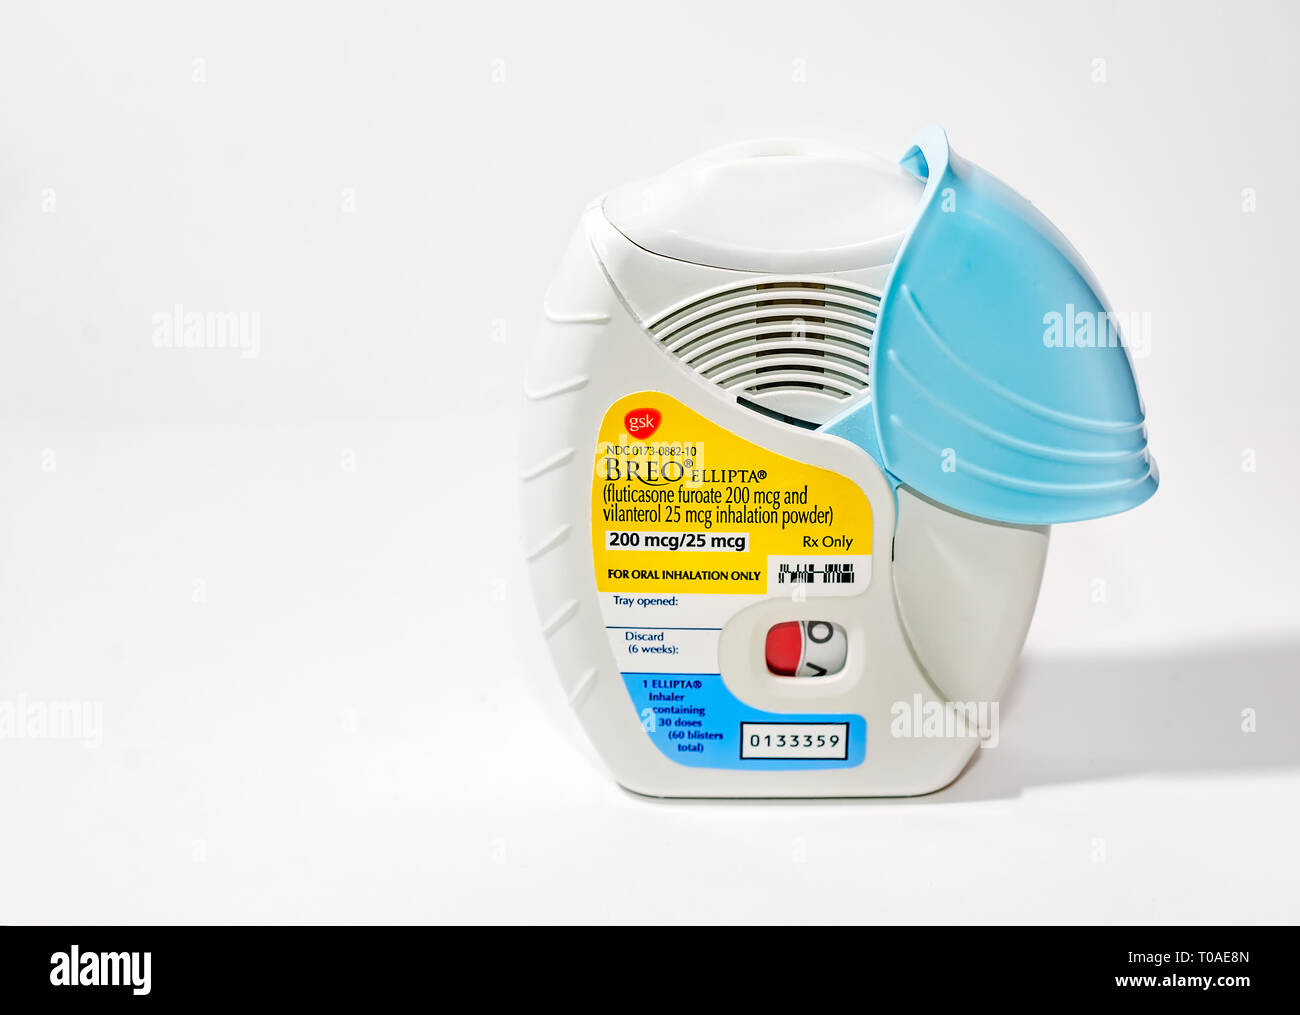 Die BREO Ellipta dosierte Asthma Inhalator, hergestellt von GlaxoSmithKline​,  ist abgebildet auf Weiß. Die aktiven Inhaltsstoffe in Breo sind Fluticason  und vilanterol Stockfotografie - Alamy